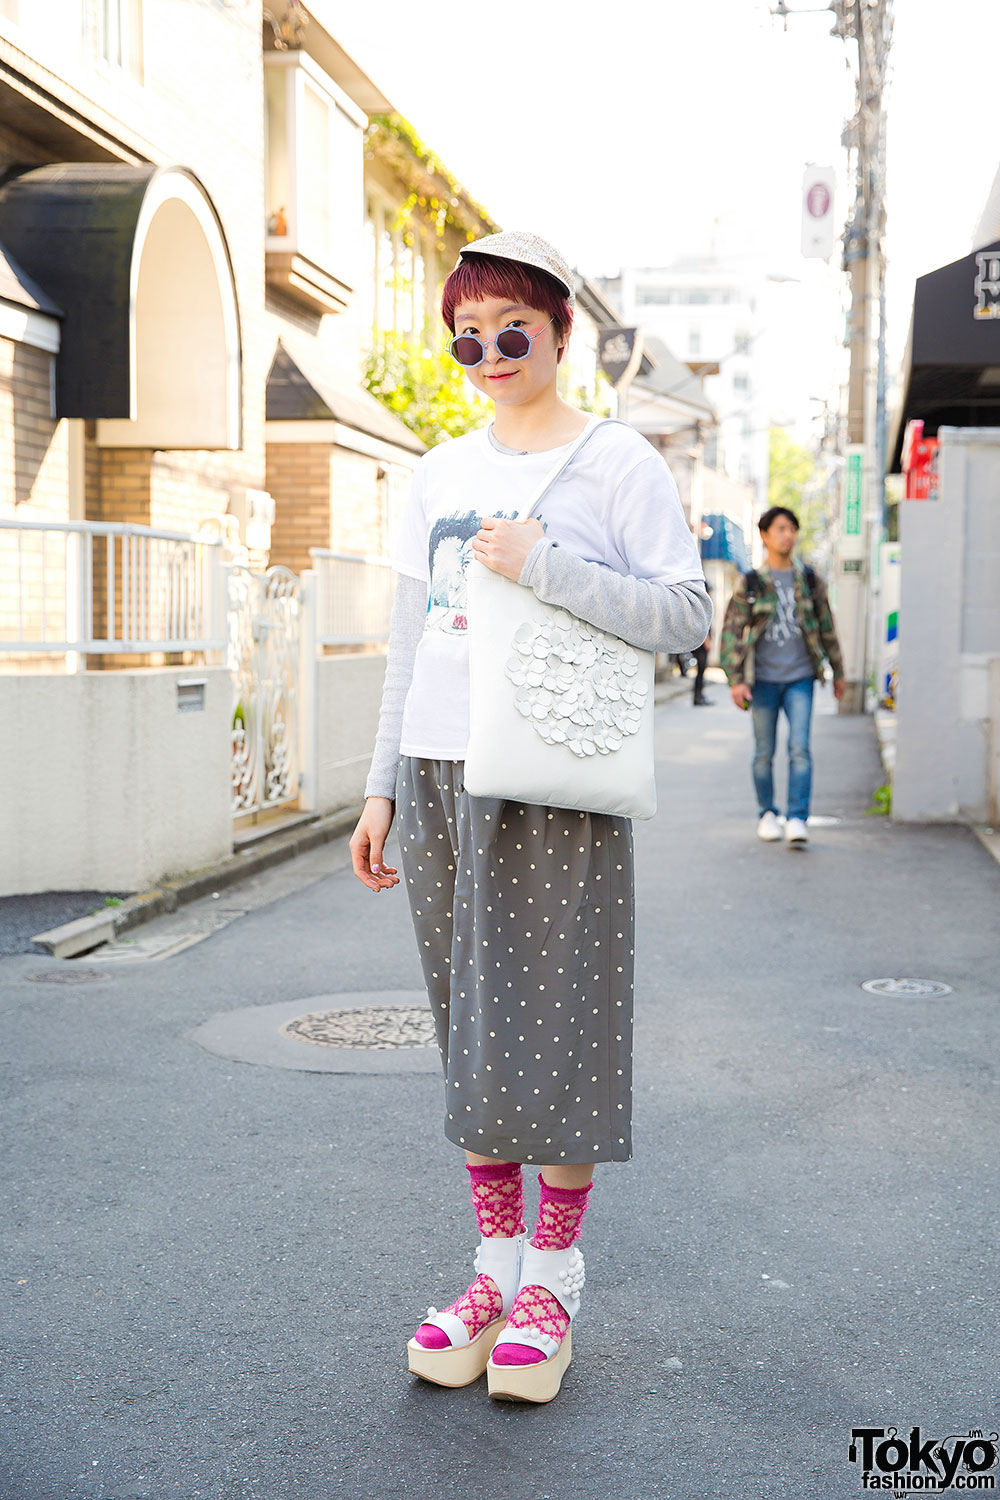 Harajuku Girl w/ Tokyo Bopper Bag & Platform Sandals, Pink House ...